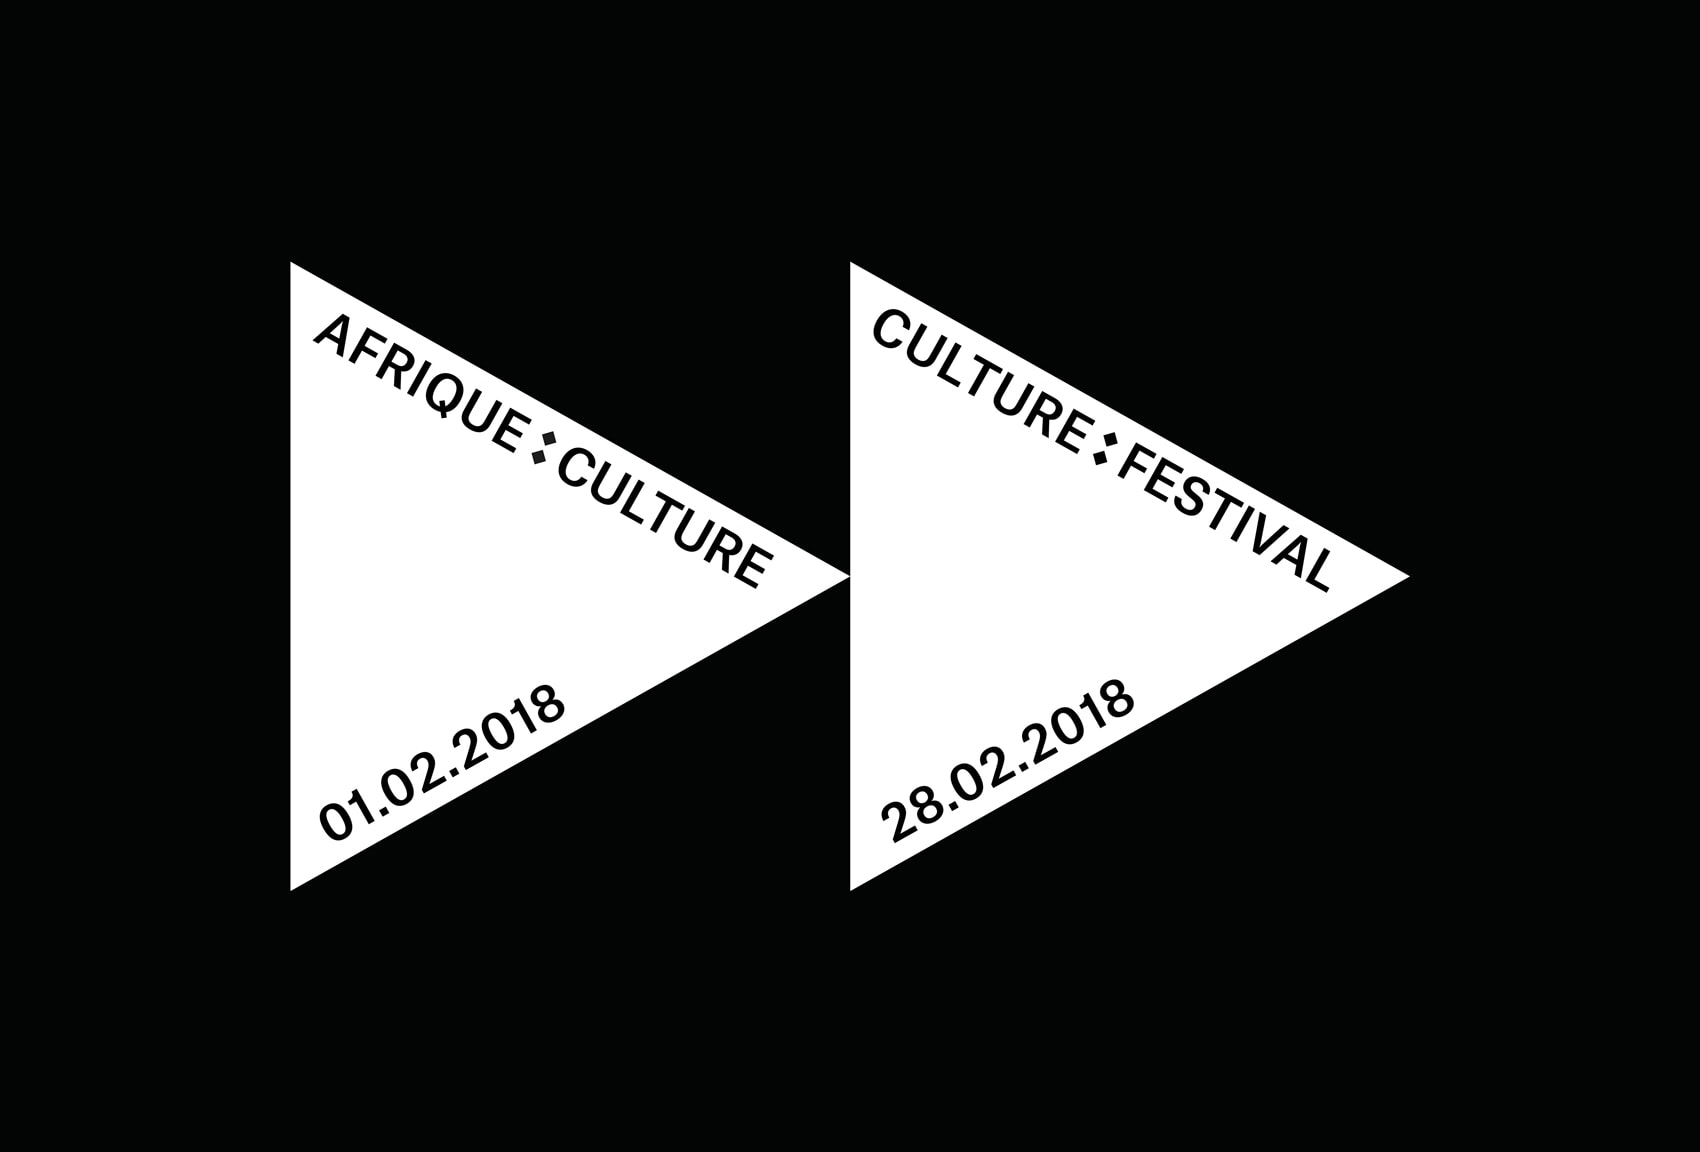 Afrique Culture Festival – Visual Journal